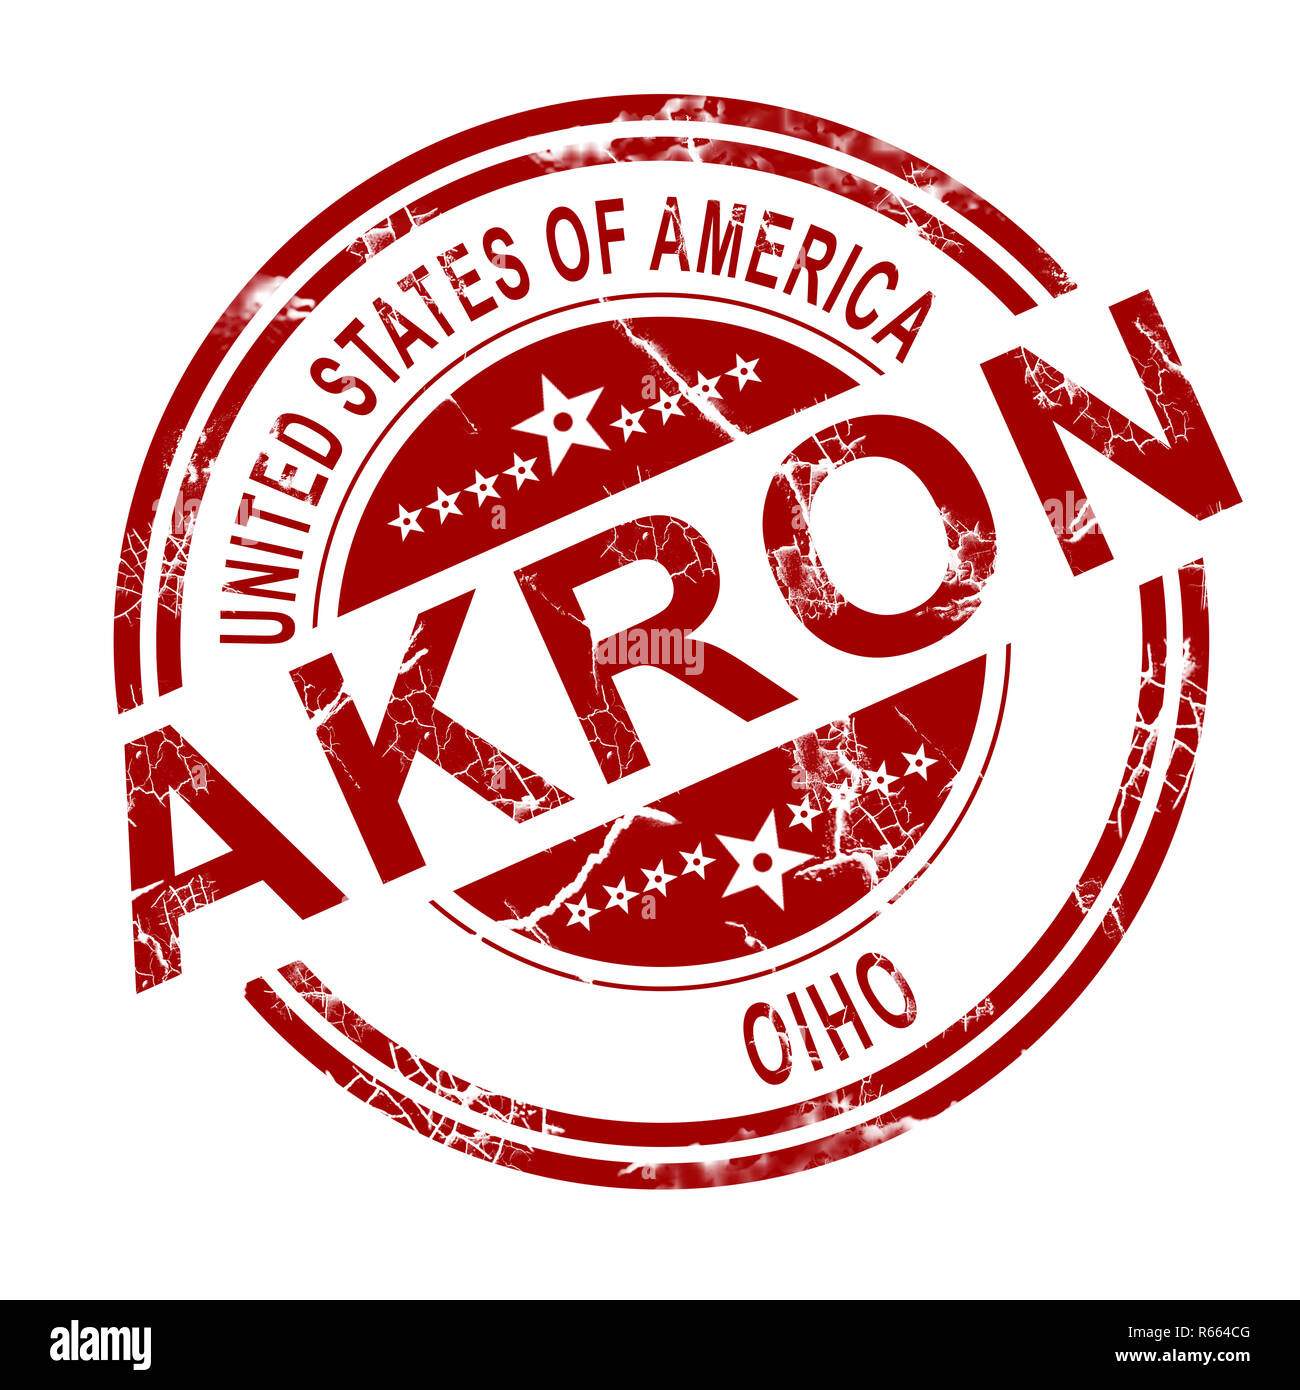 Akron Ohio stamp with white background Stock Photo